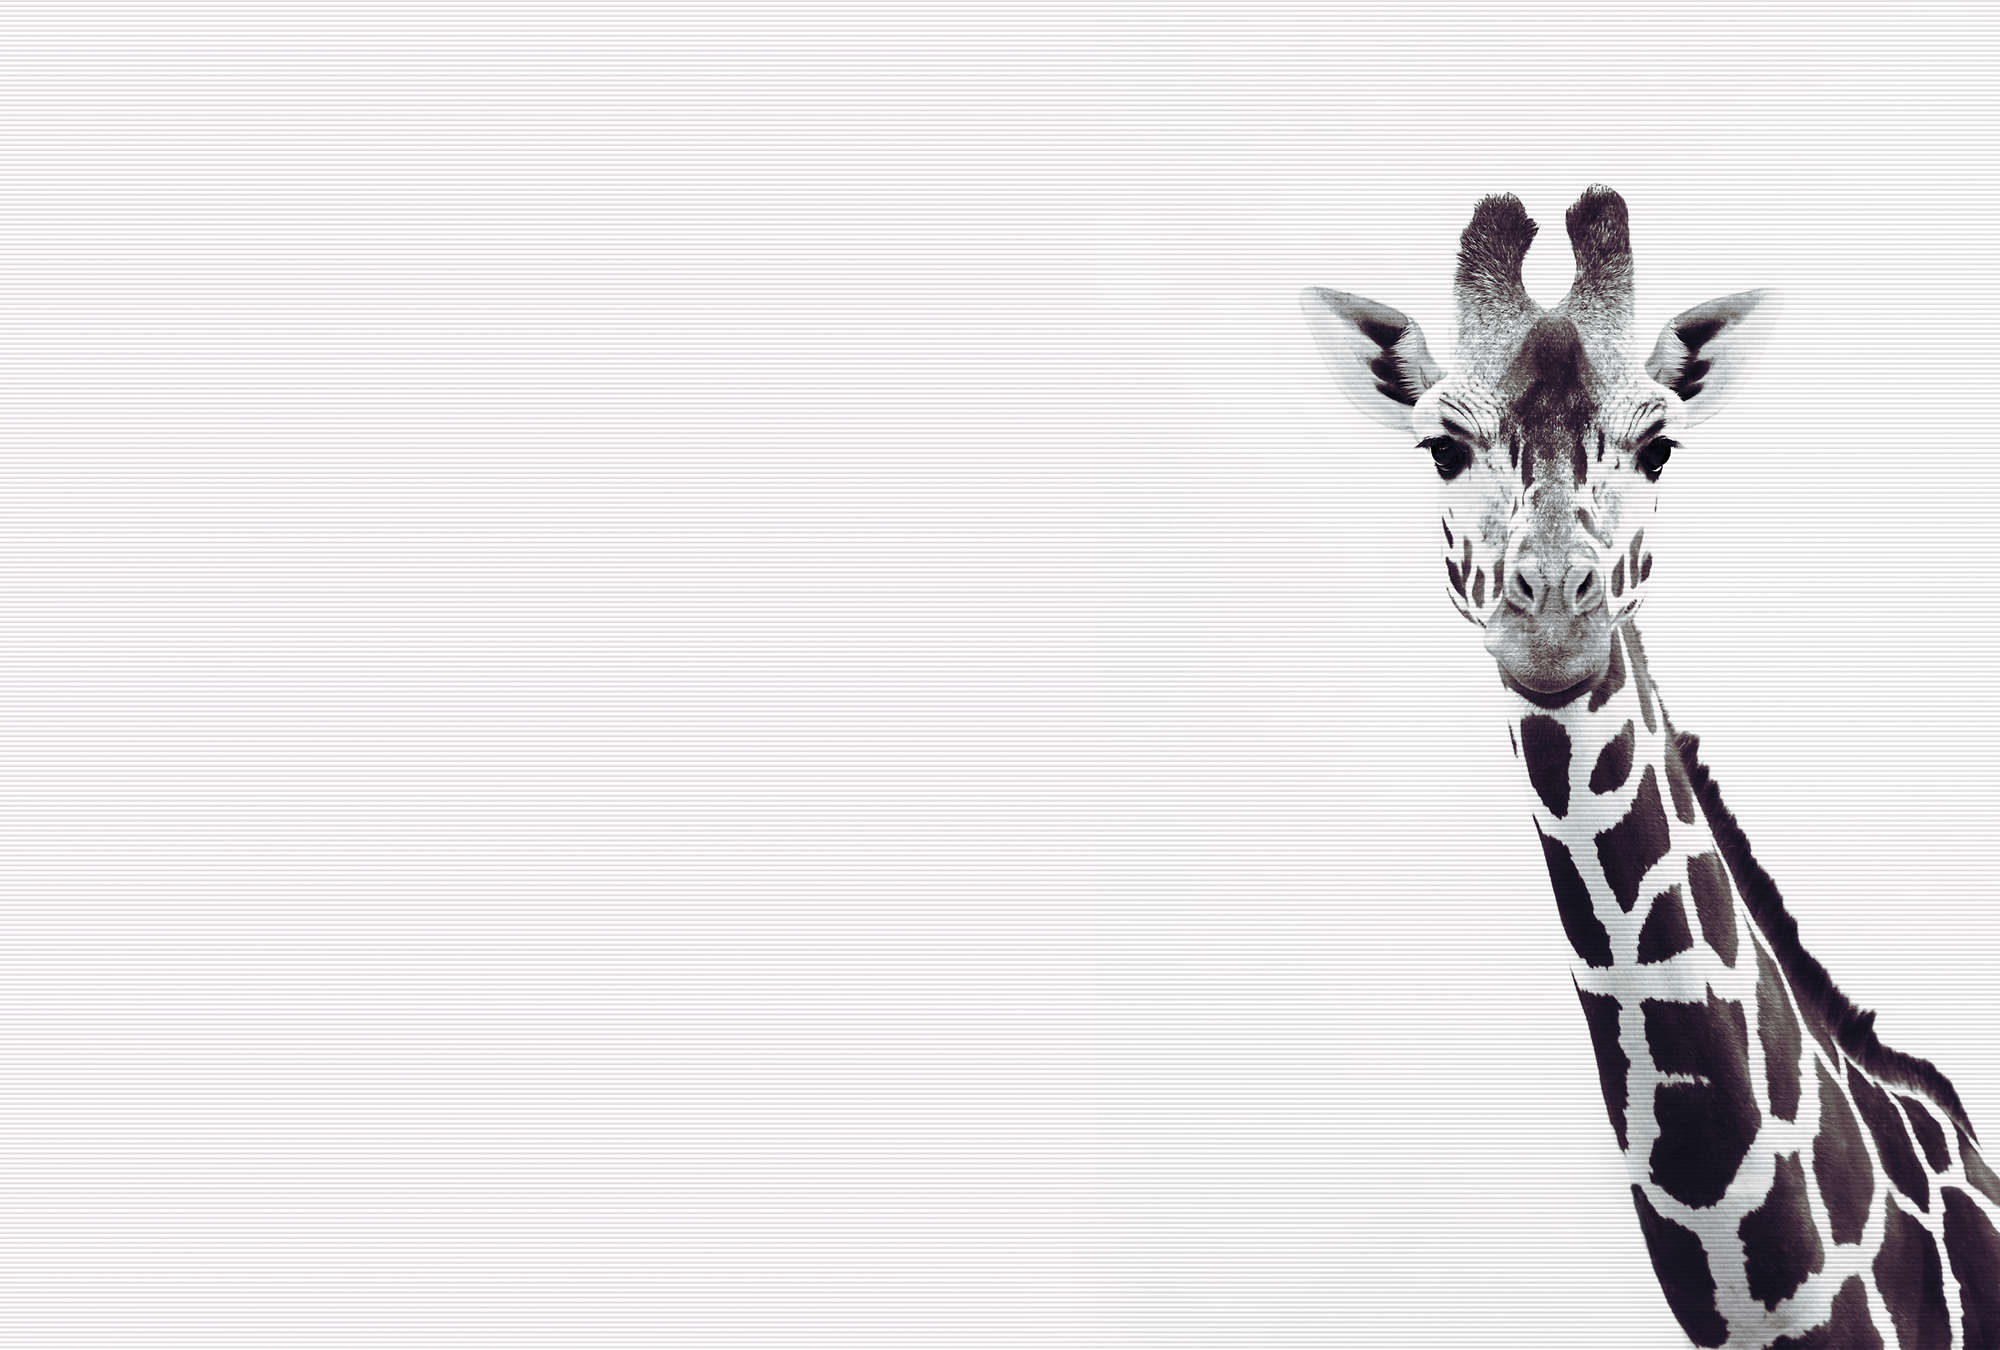             Giraffes mural in XXL black and white design
        